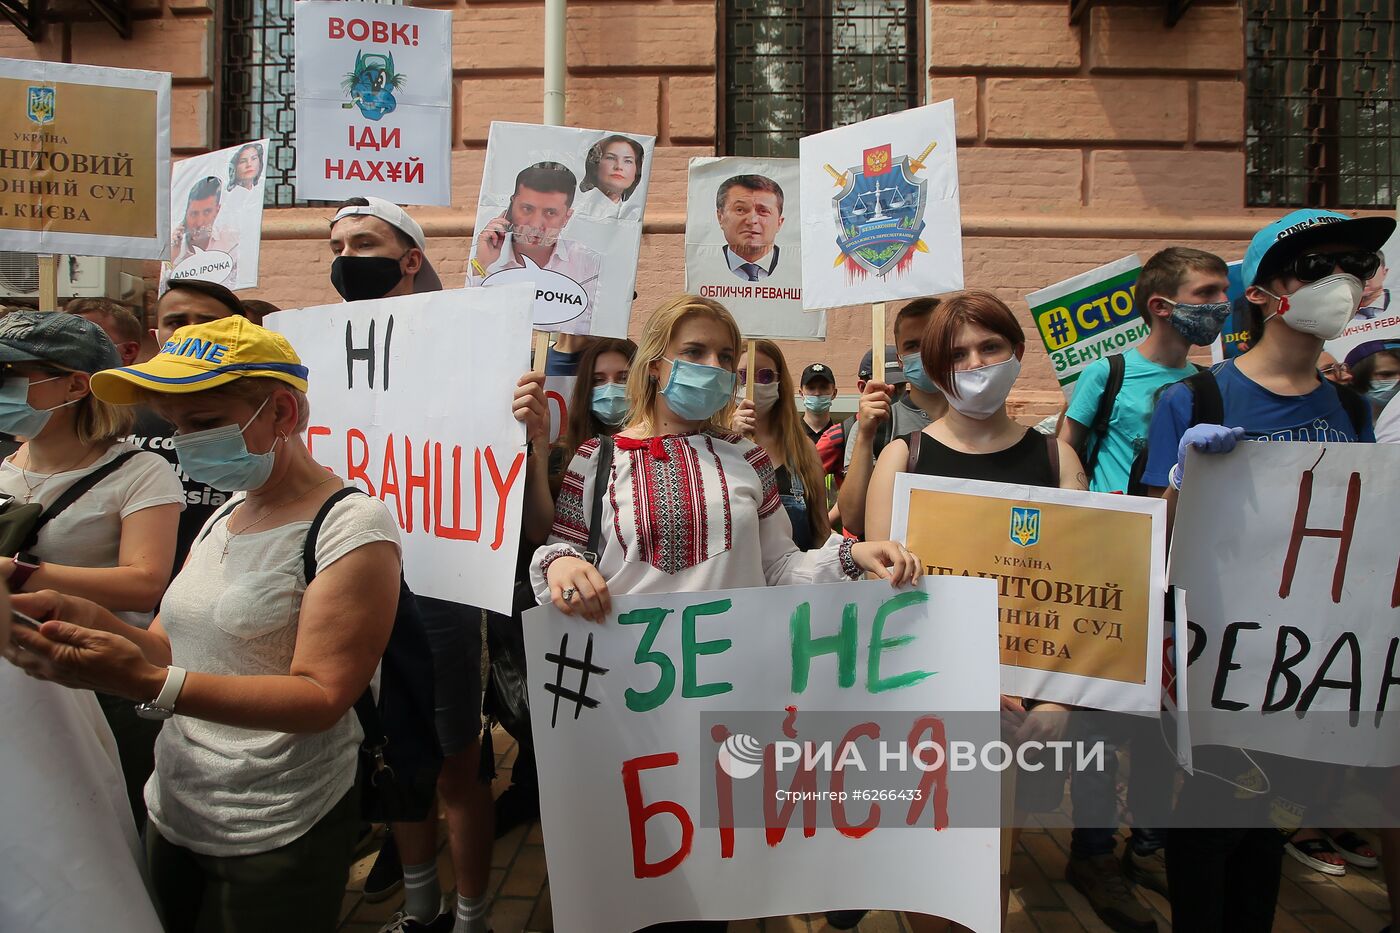 Акция сторонников П. Порошенко в Киеве